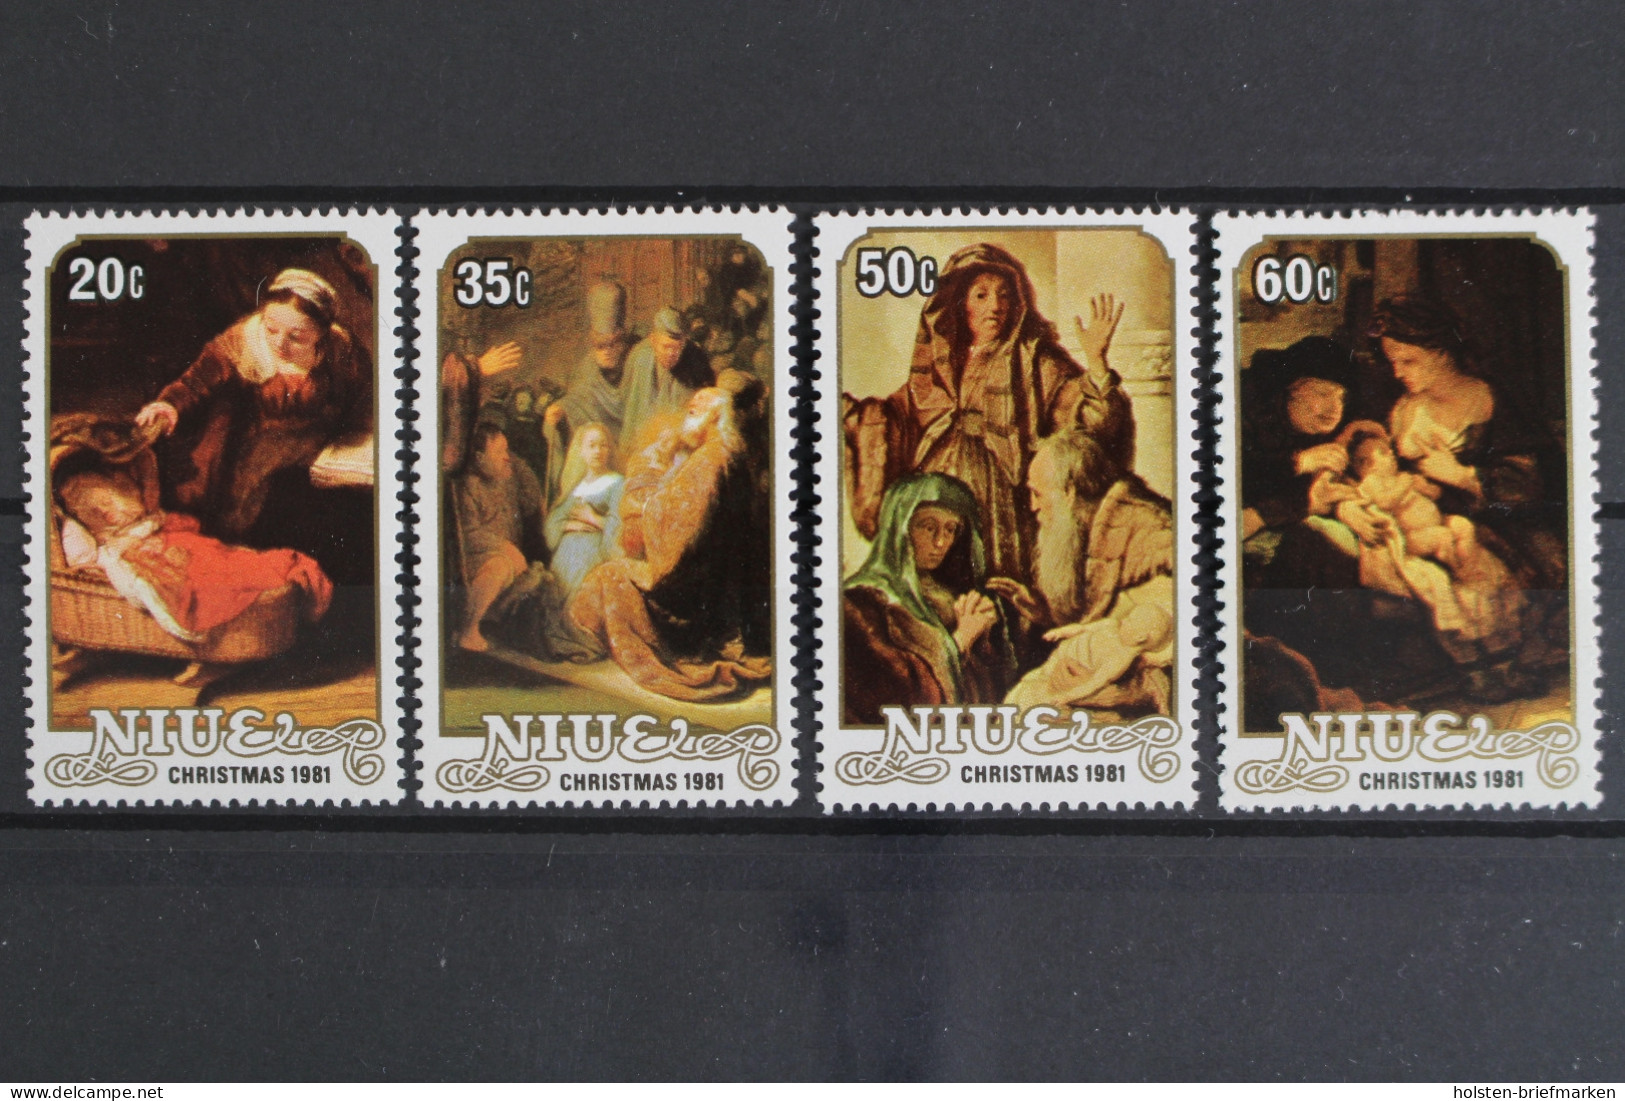 Niue, MiNr. 448-451, Weihnachten, Rembrandt, Postfrisch - Niue